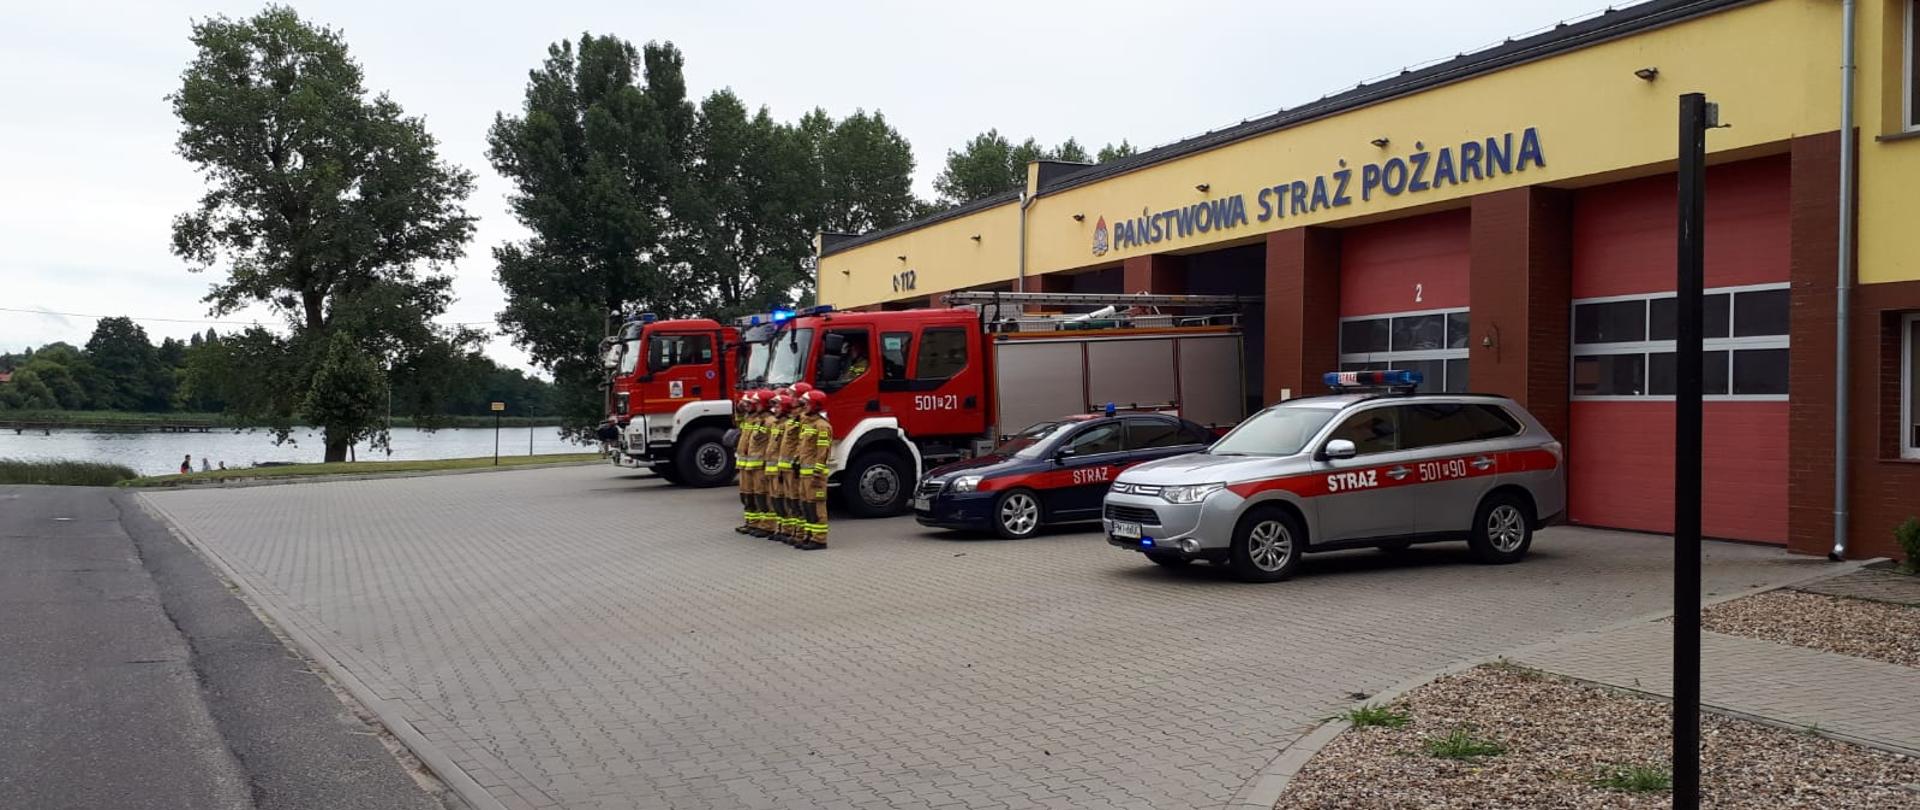 Zdjęcie przedstawia międzychodzkich strażaków stojących przez pojazdami pożarniczymi podczas godziny "W" - 17:00.